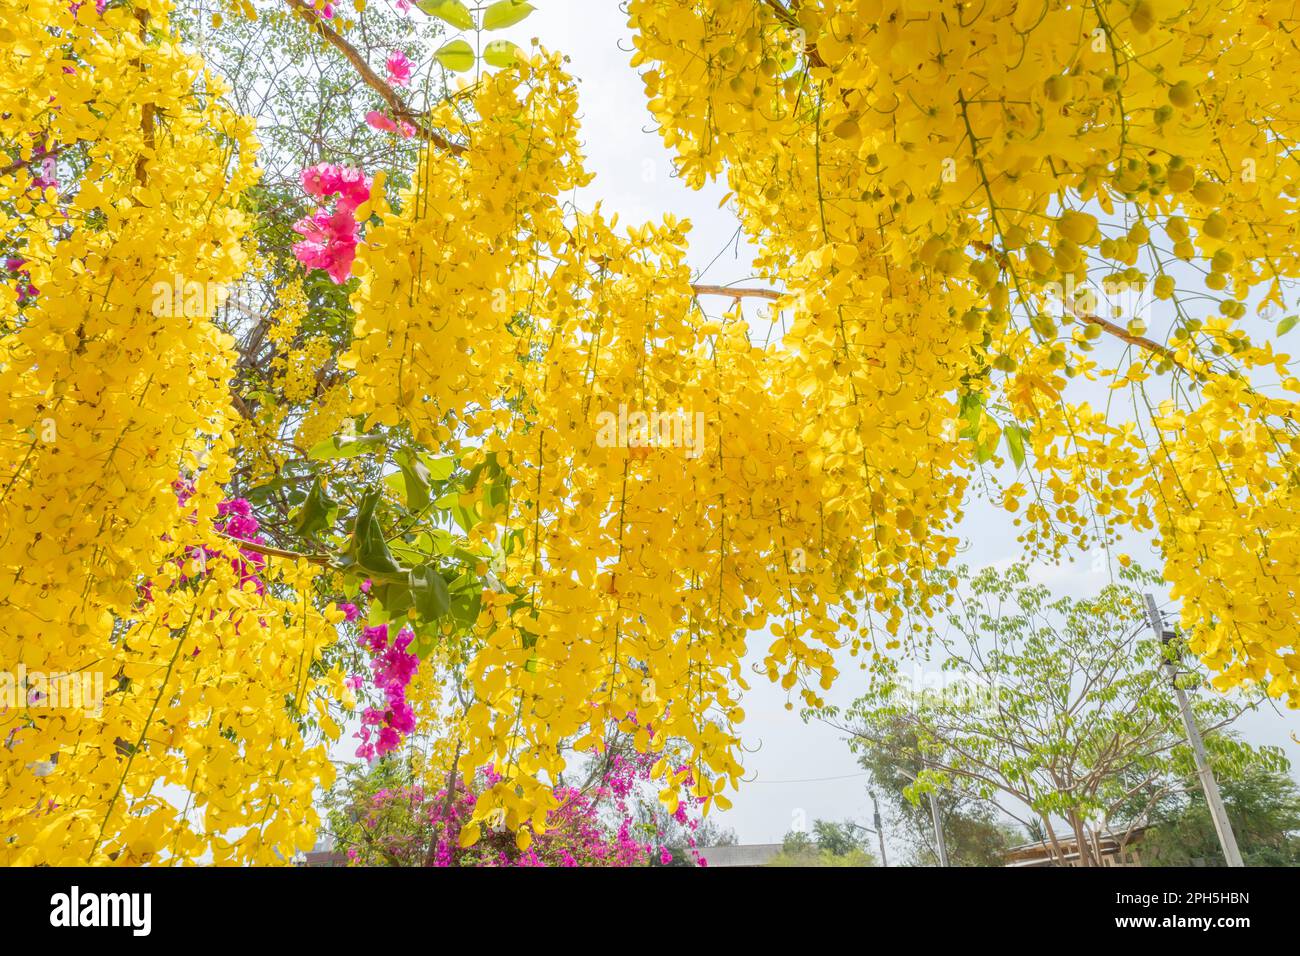 Douche dorée, fistule de Cassia, Cassia purgeant, Laburnum indien, ou Pudding-pipe Tree. Asie du Sud-est arbre à fleurs jaunes tropicales Banque D'Images